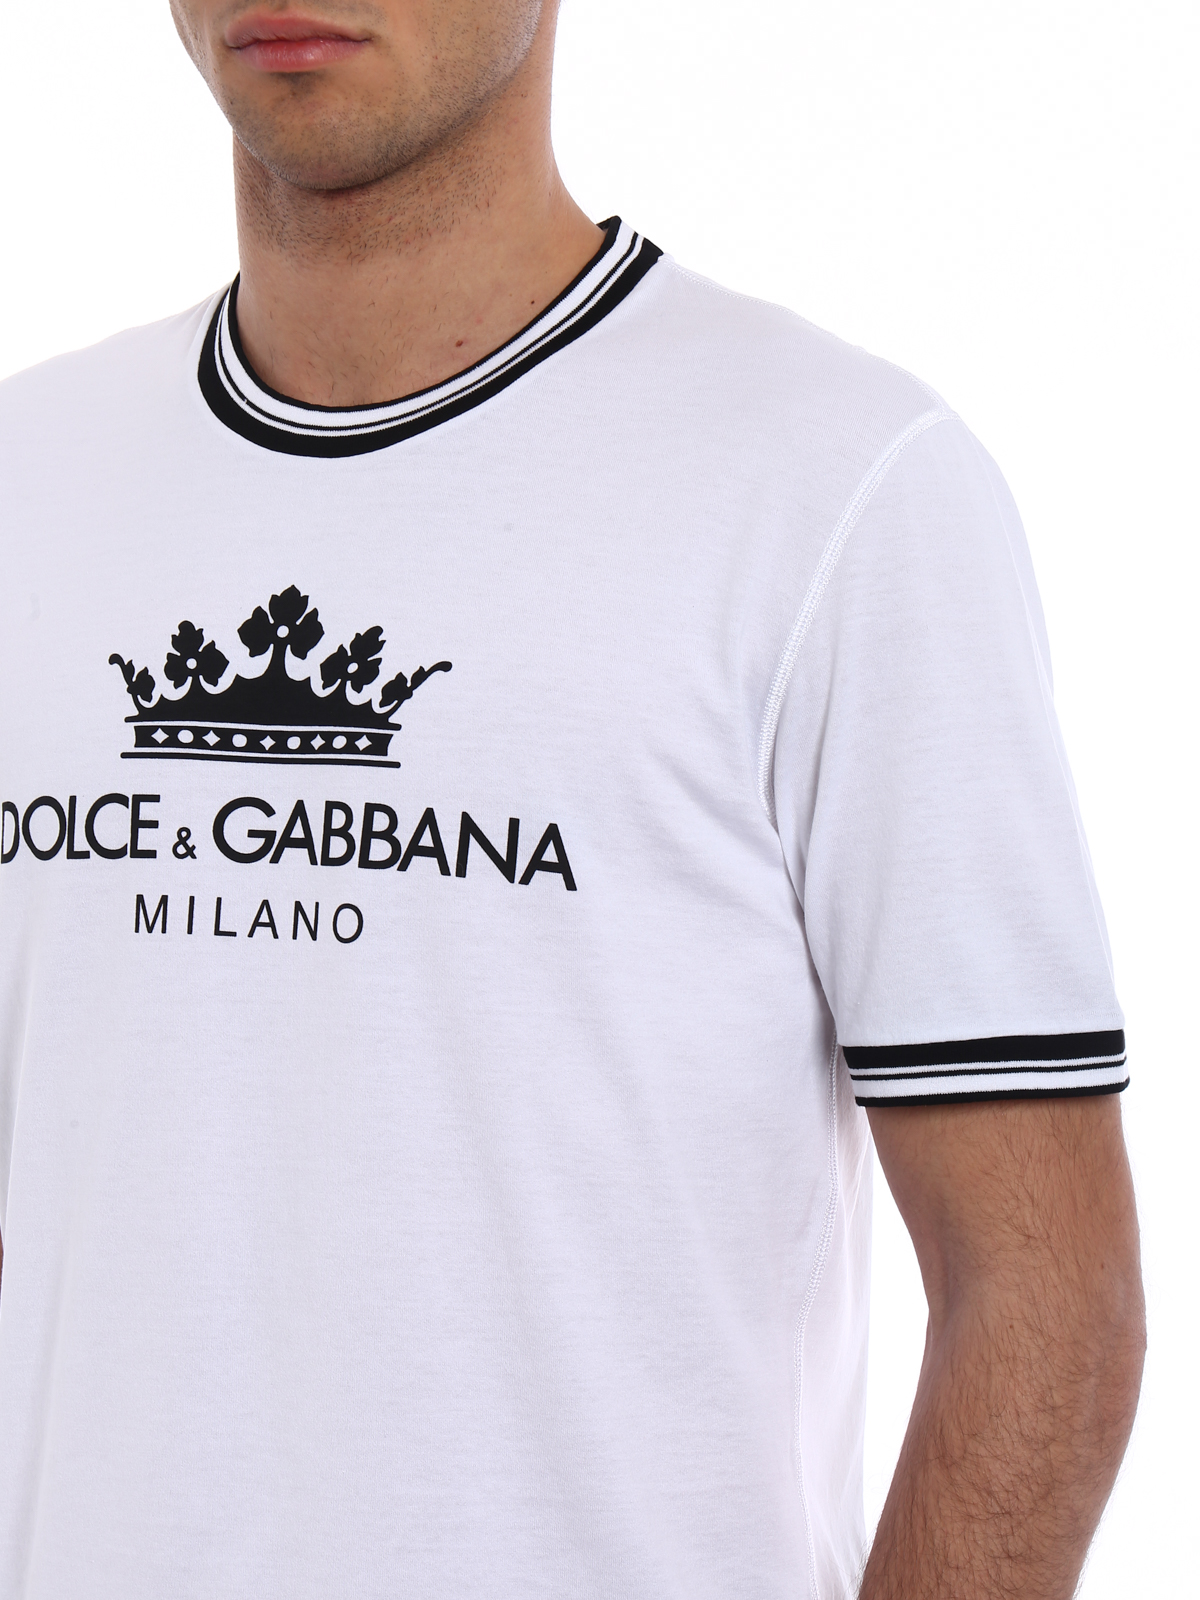 dolce & gabbana white t shirt